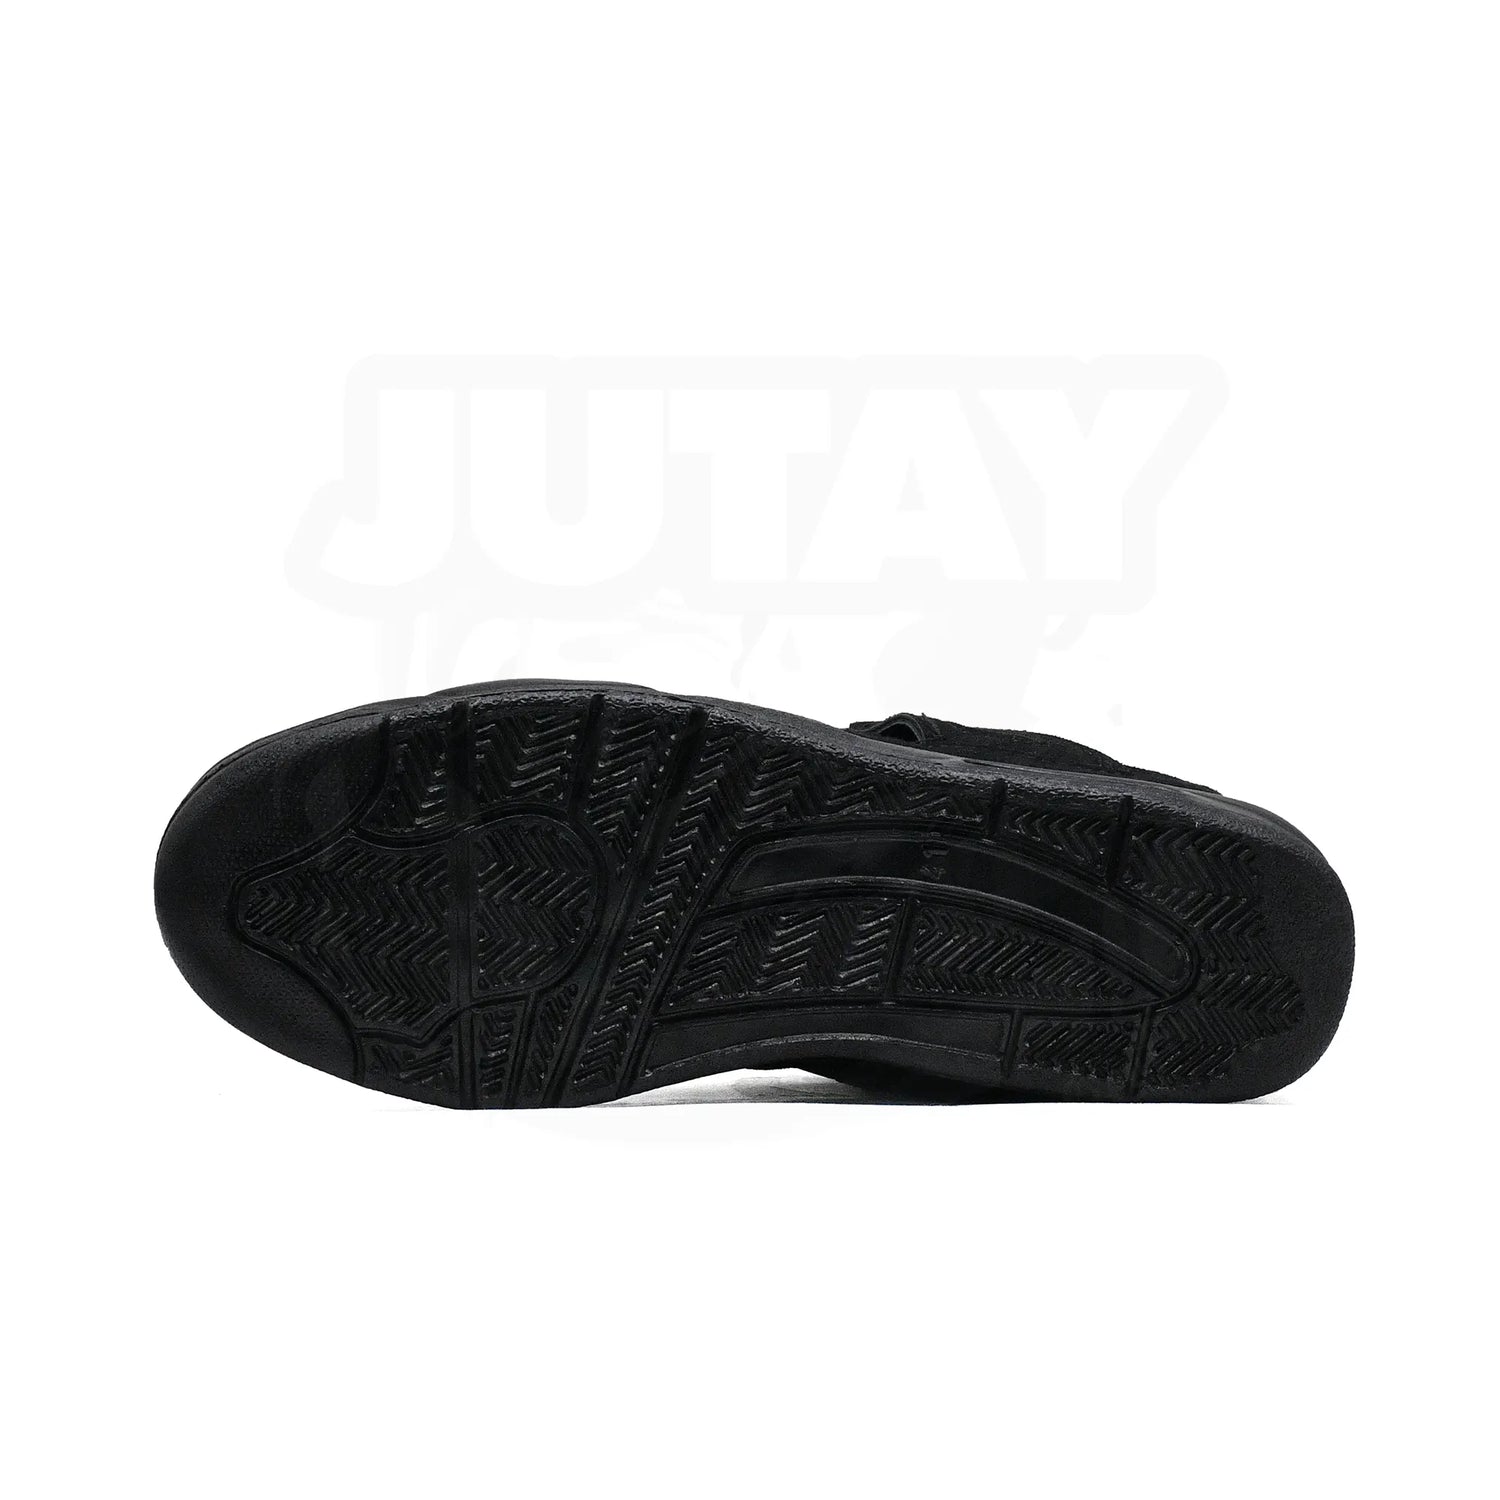 AJ4 - BLACK CAT 2020 - Jutay.co